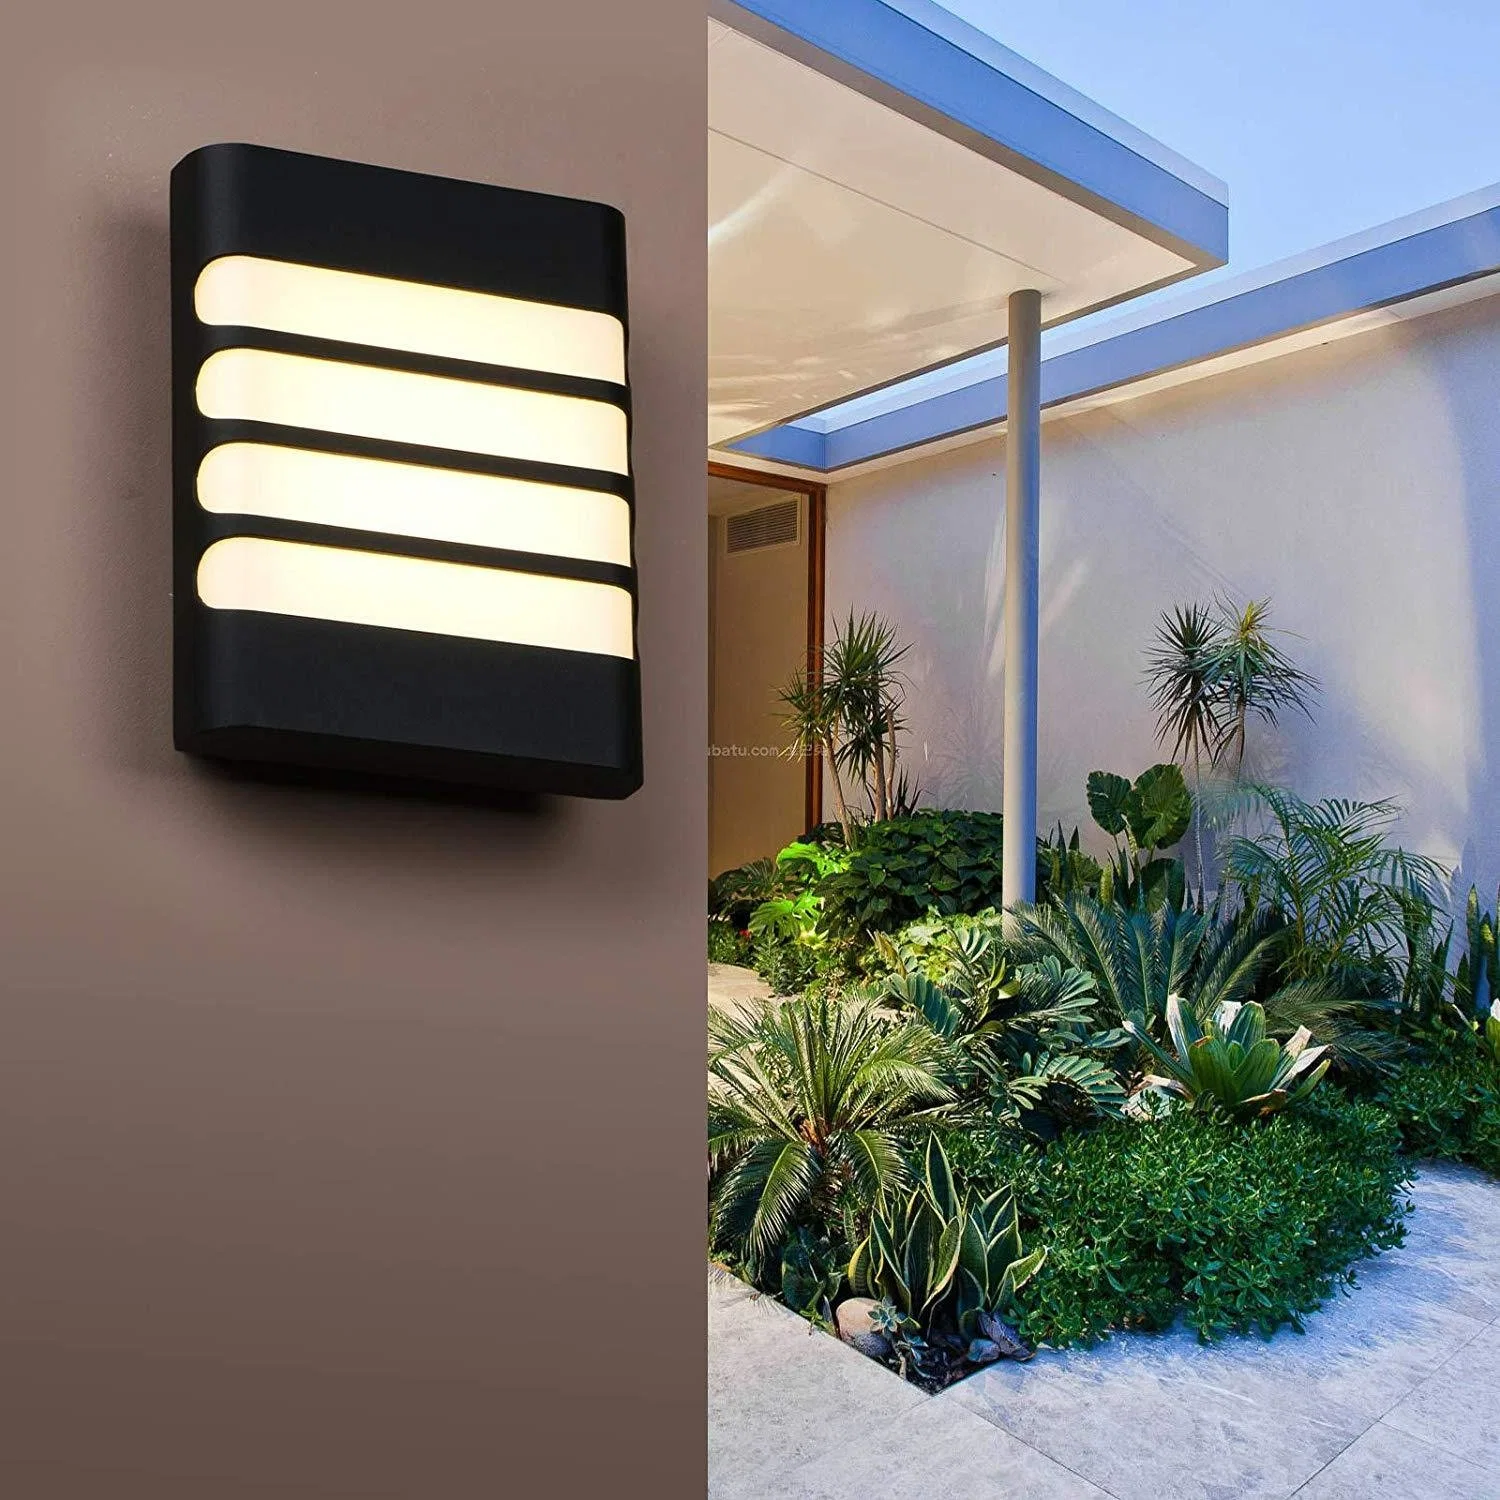 Décoration moderne et imperméable pour le jardin Home Night Light Down Wall Léger